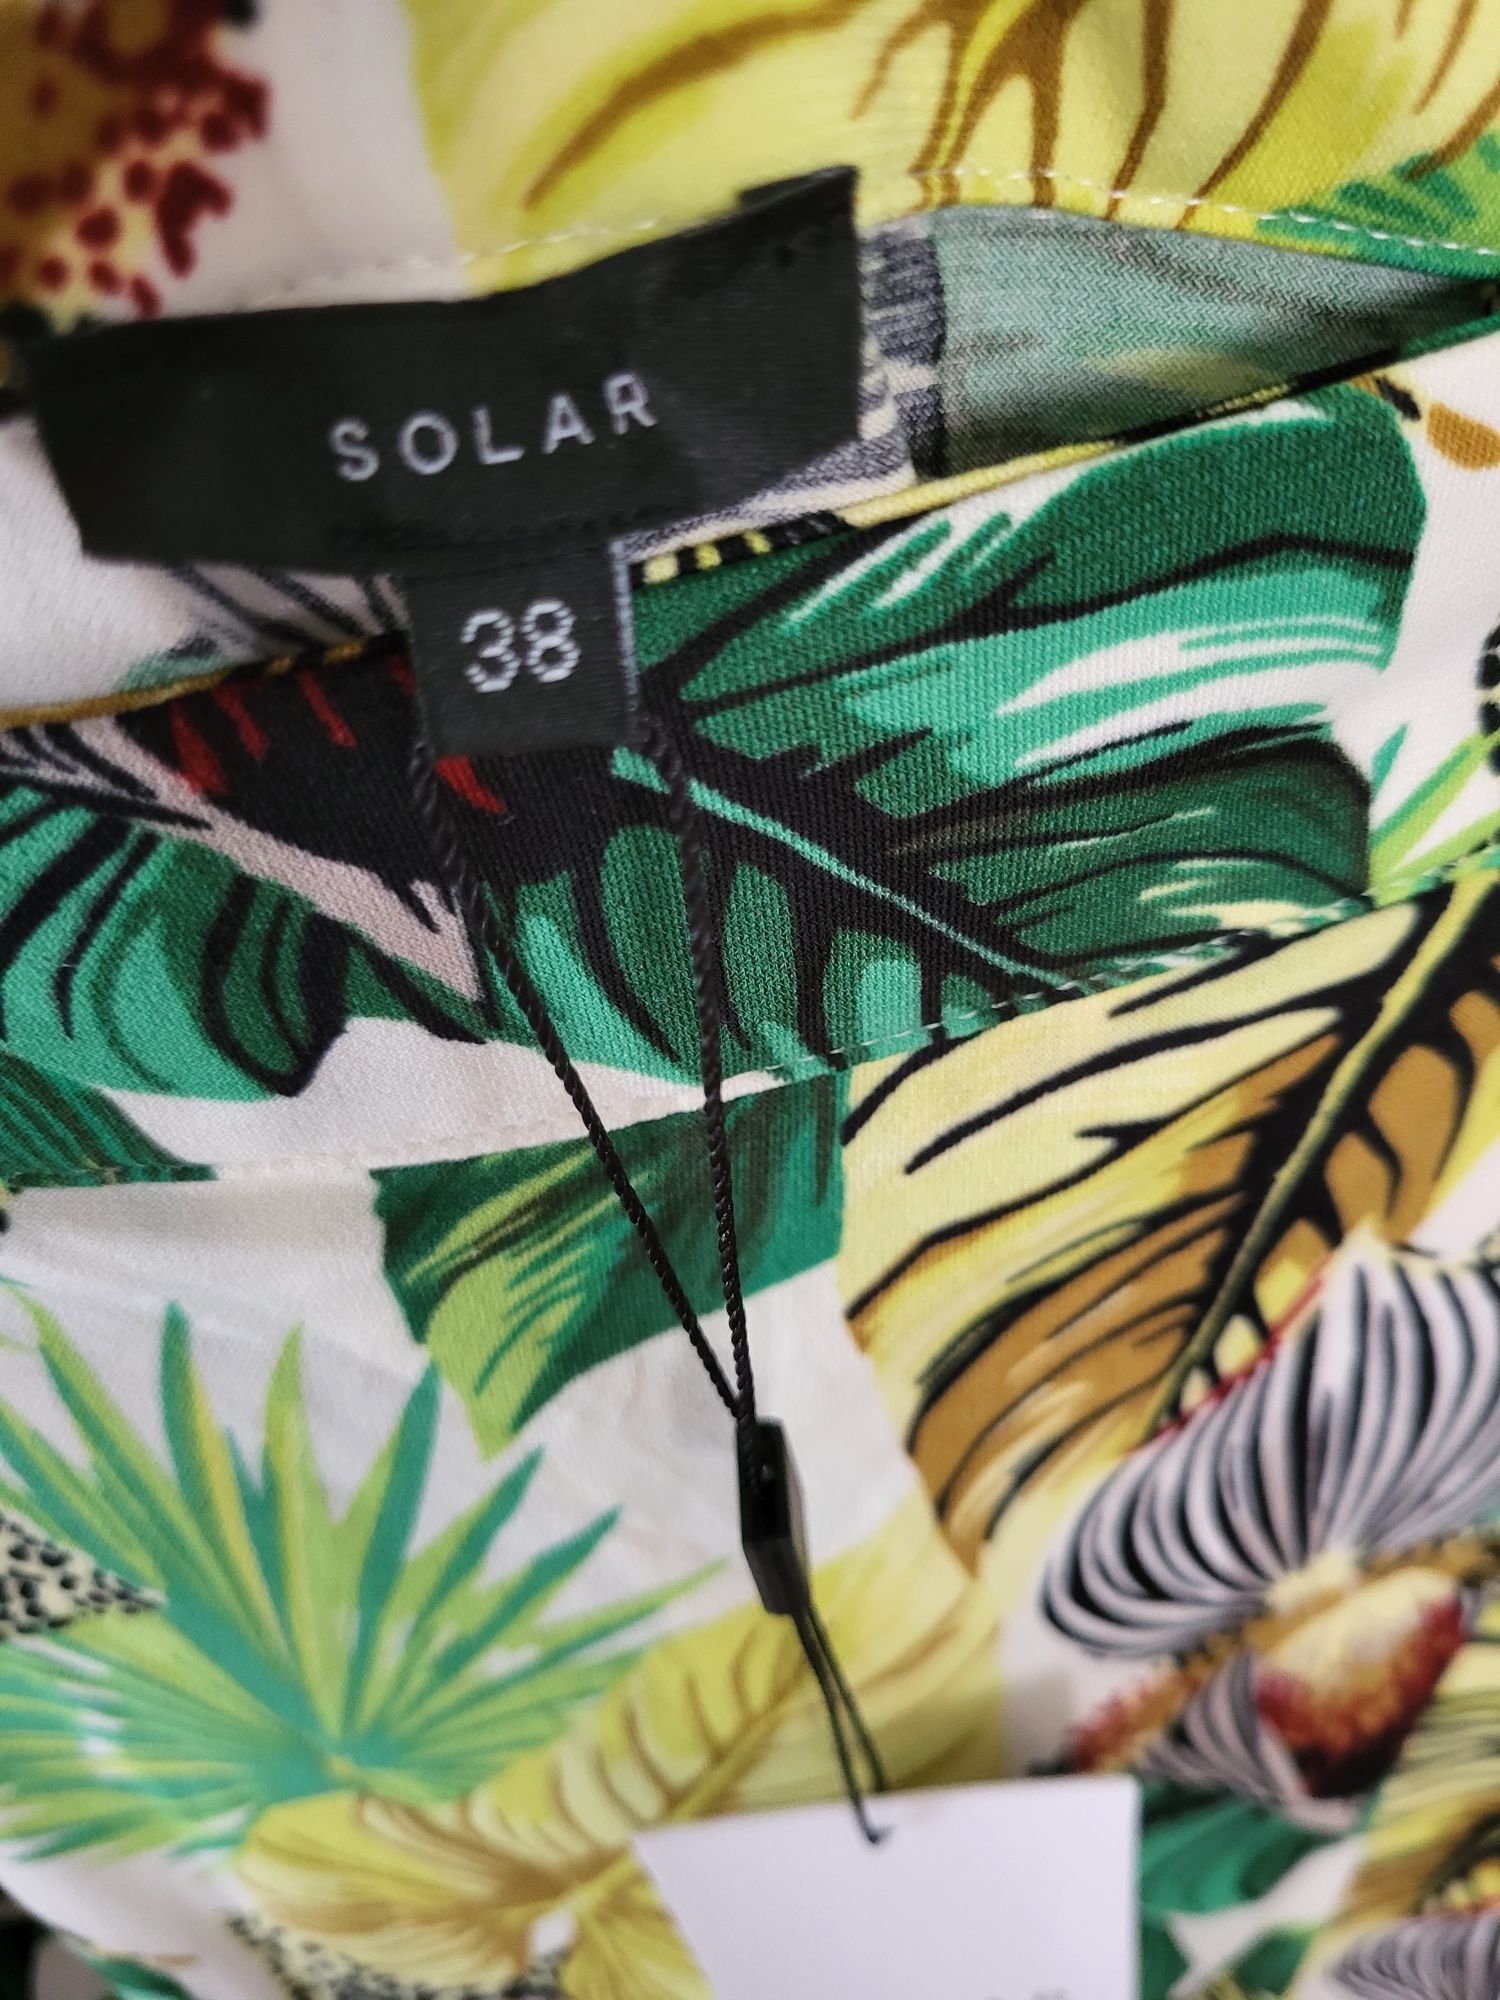 Nowe spodnie Solar 38